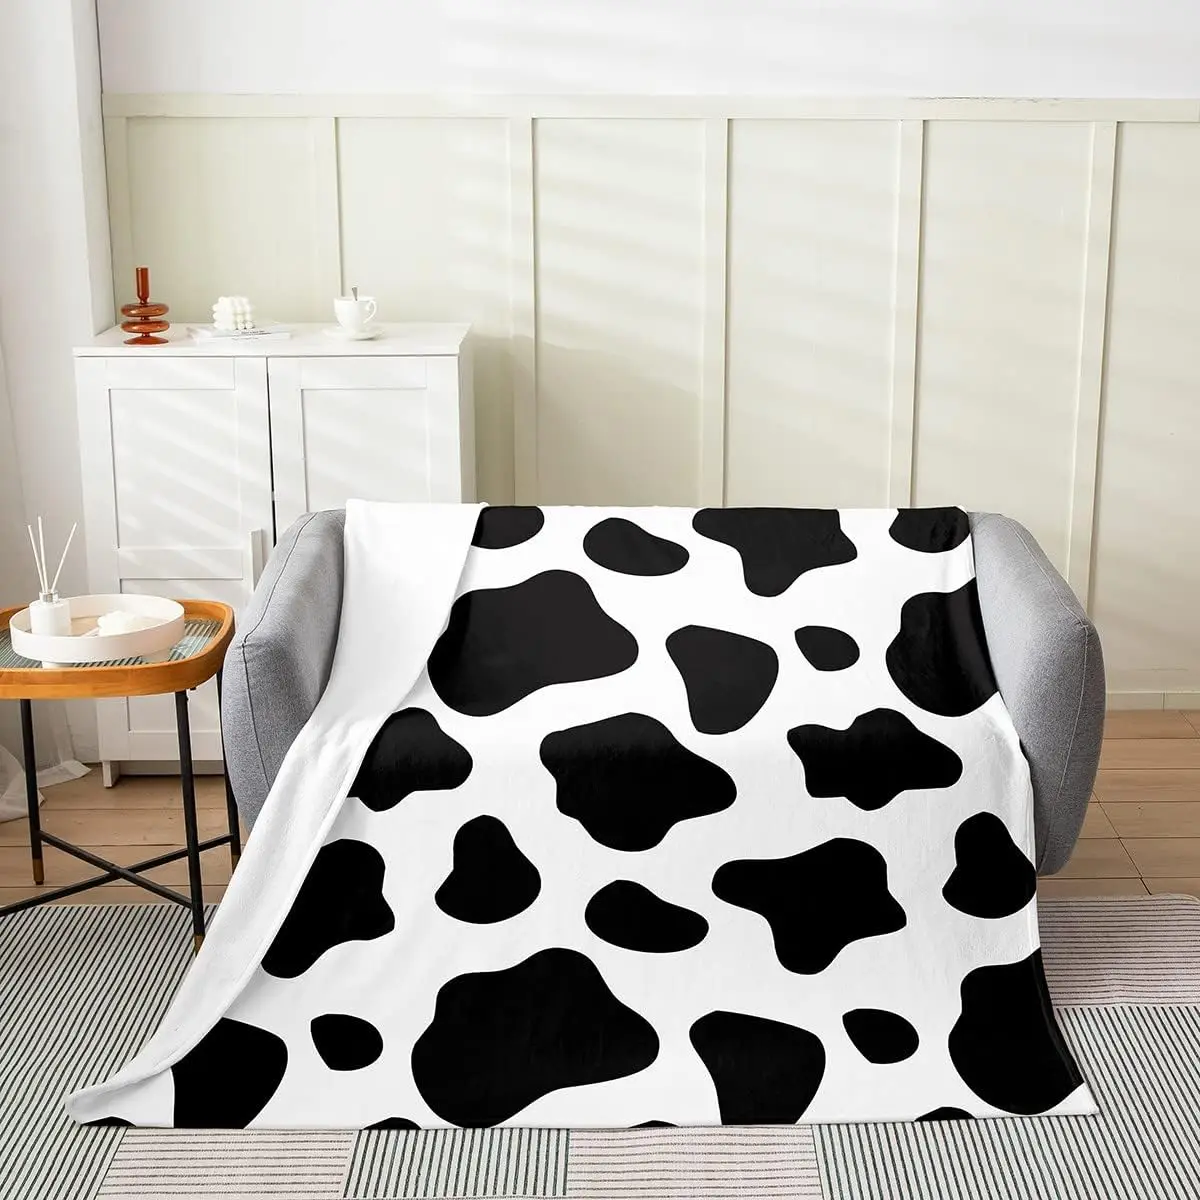 

Фланелевое Флисовое одеяло с принтом коровы, всесезонное покрывало черного и белого цвета для кровати, дивана, детское пушистое одеяло с мультяшным принтом молочной коровы